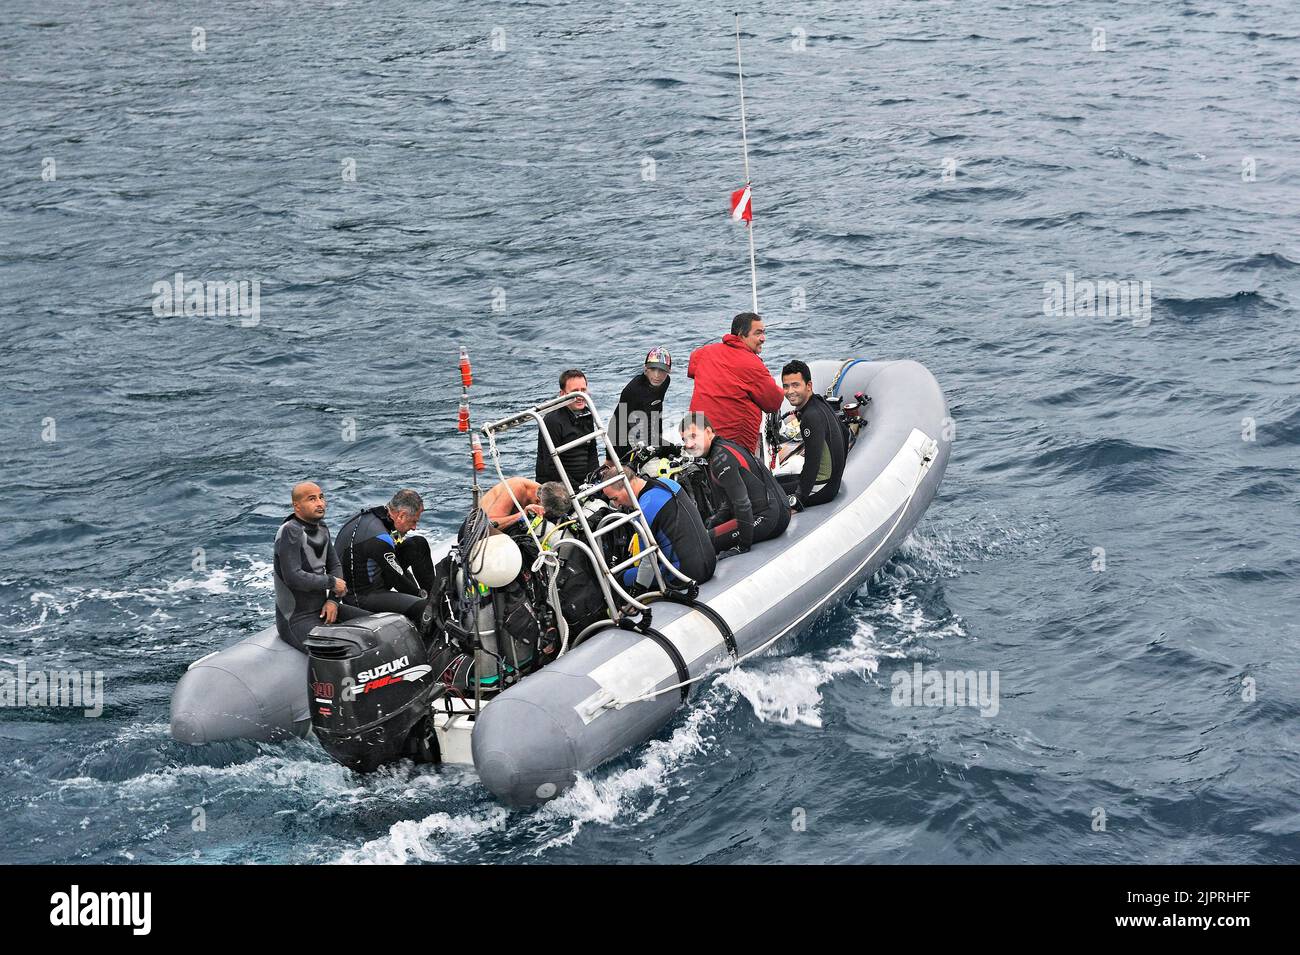 Les plongeurs se rendent sur leur site de plongée dans un bateau gonflable, à bord d'un agresseur Okeanoss, sur l'île de Cocos, au Costa Rica, en Amérique centrale Banque D'Images